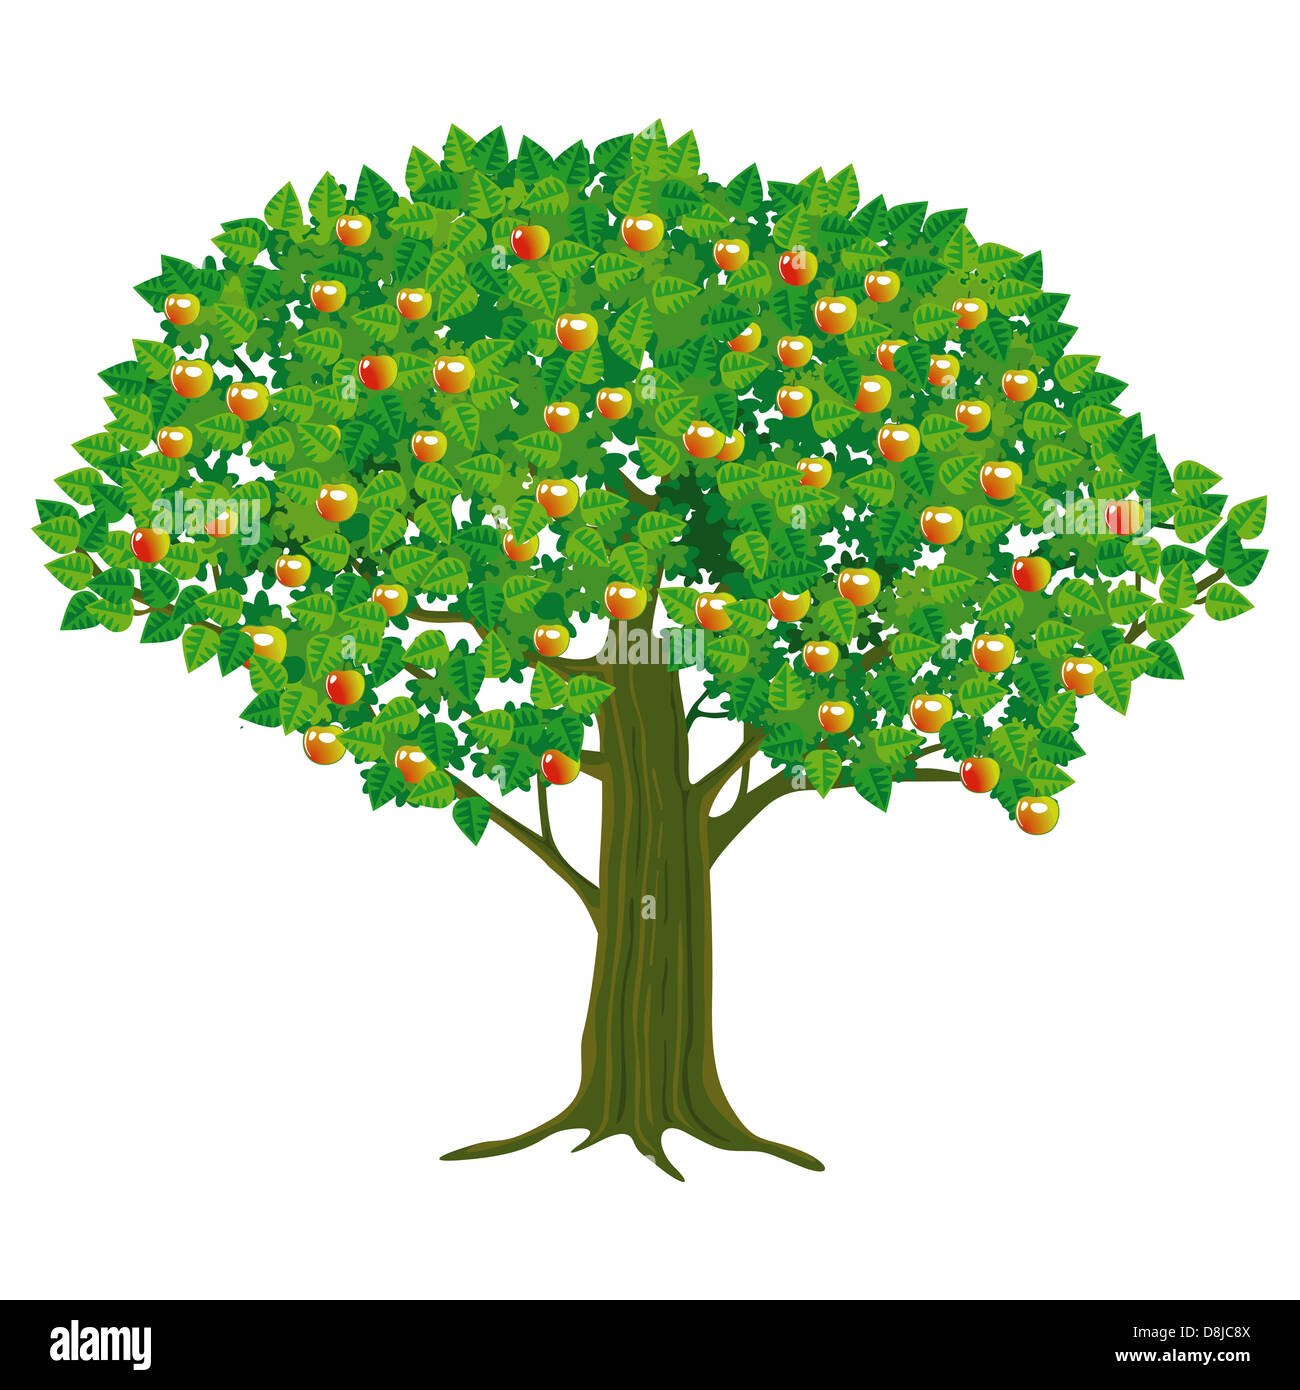 Яблоня с зелеными листочками без яблок картинка